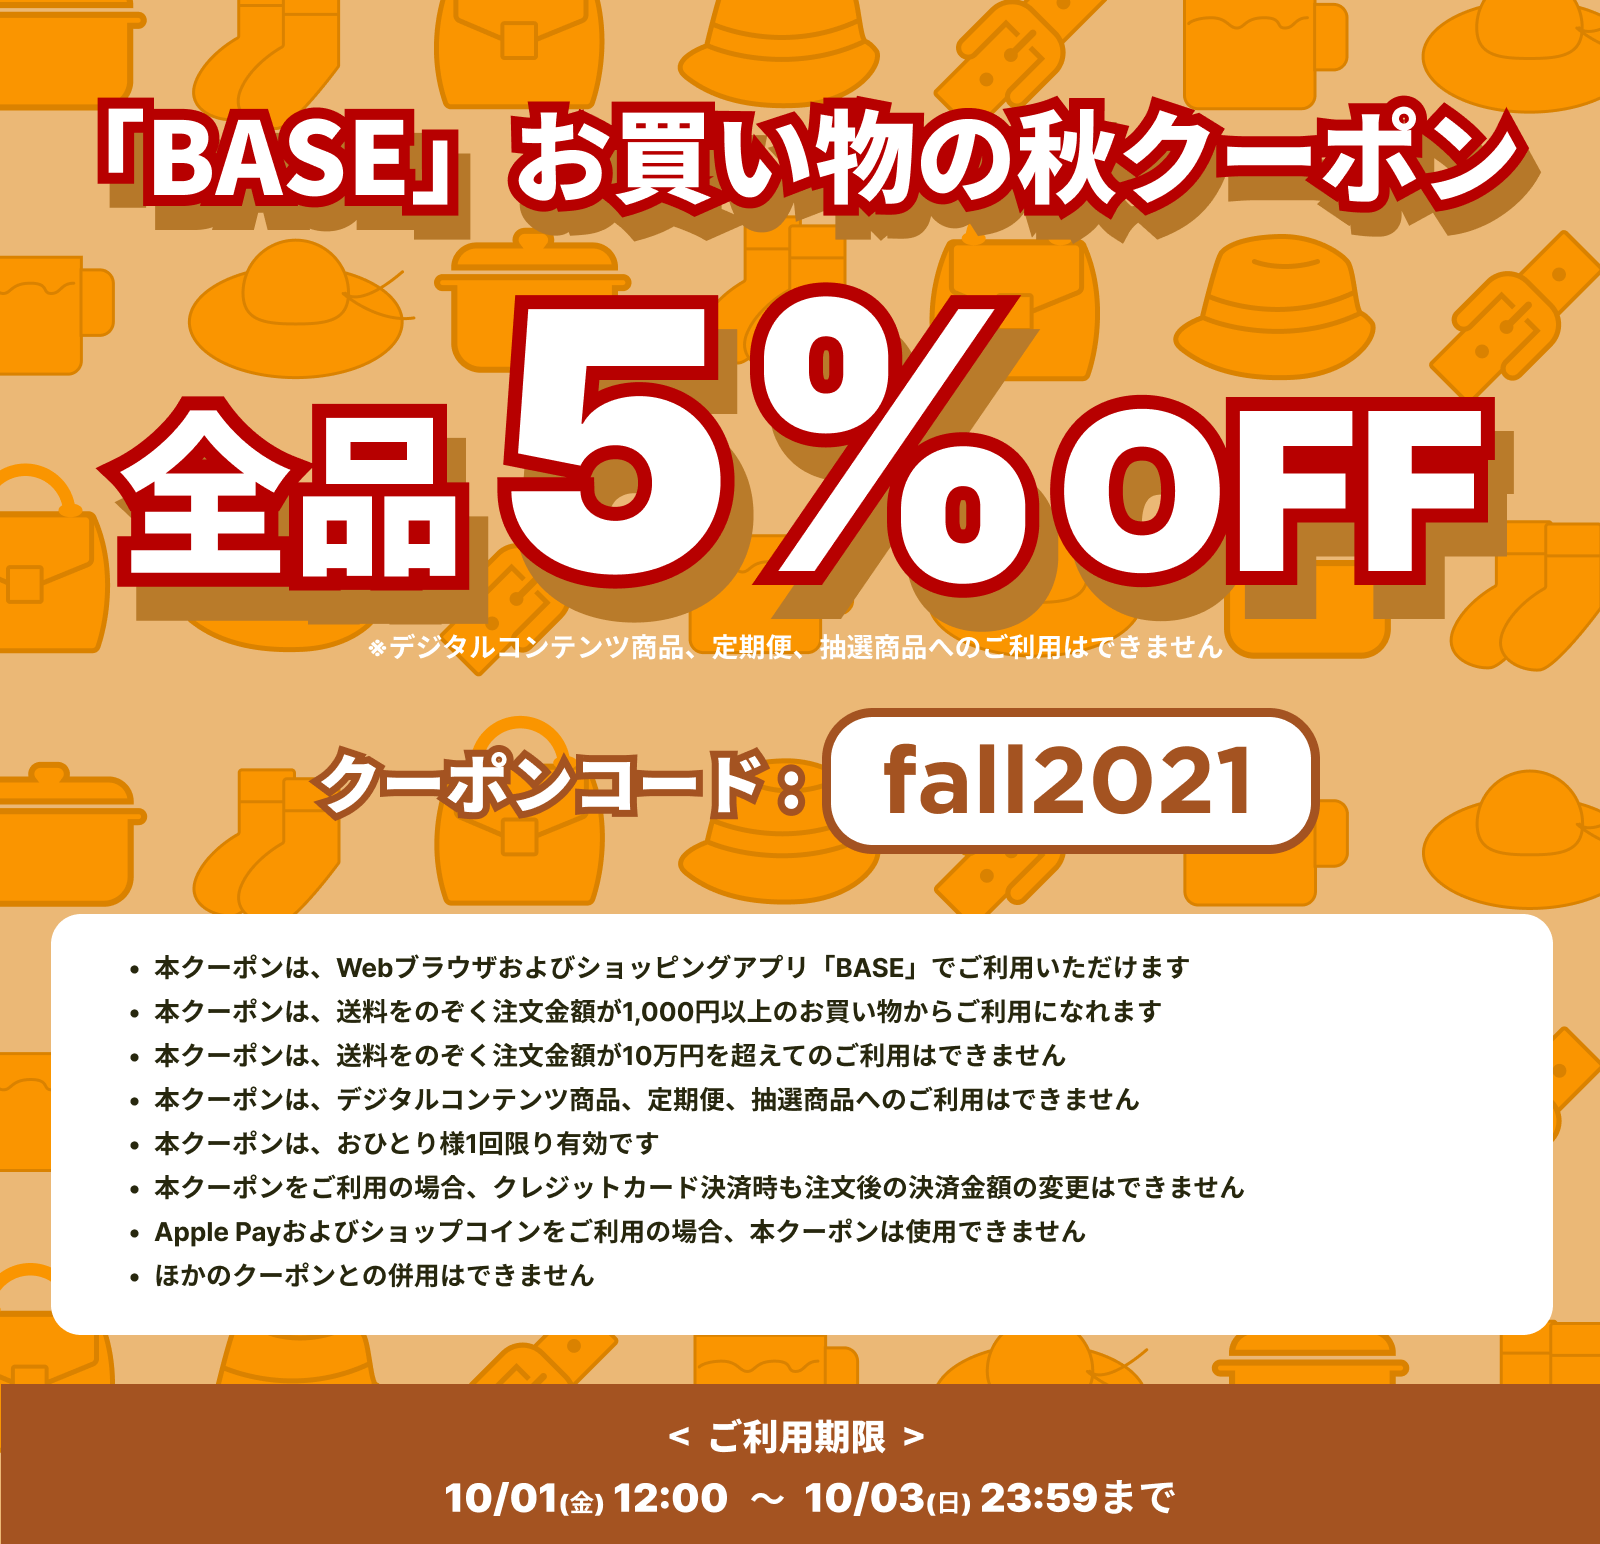 「BASE」お買い物の秋クーポンキャンペーン！